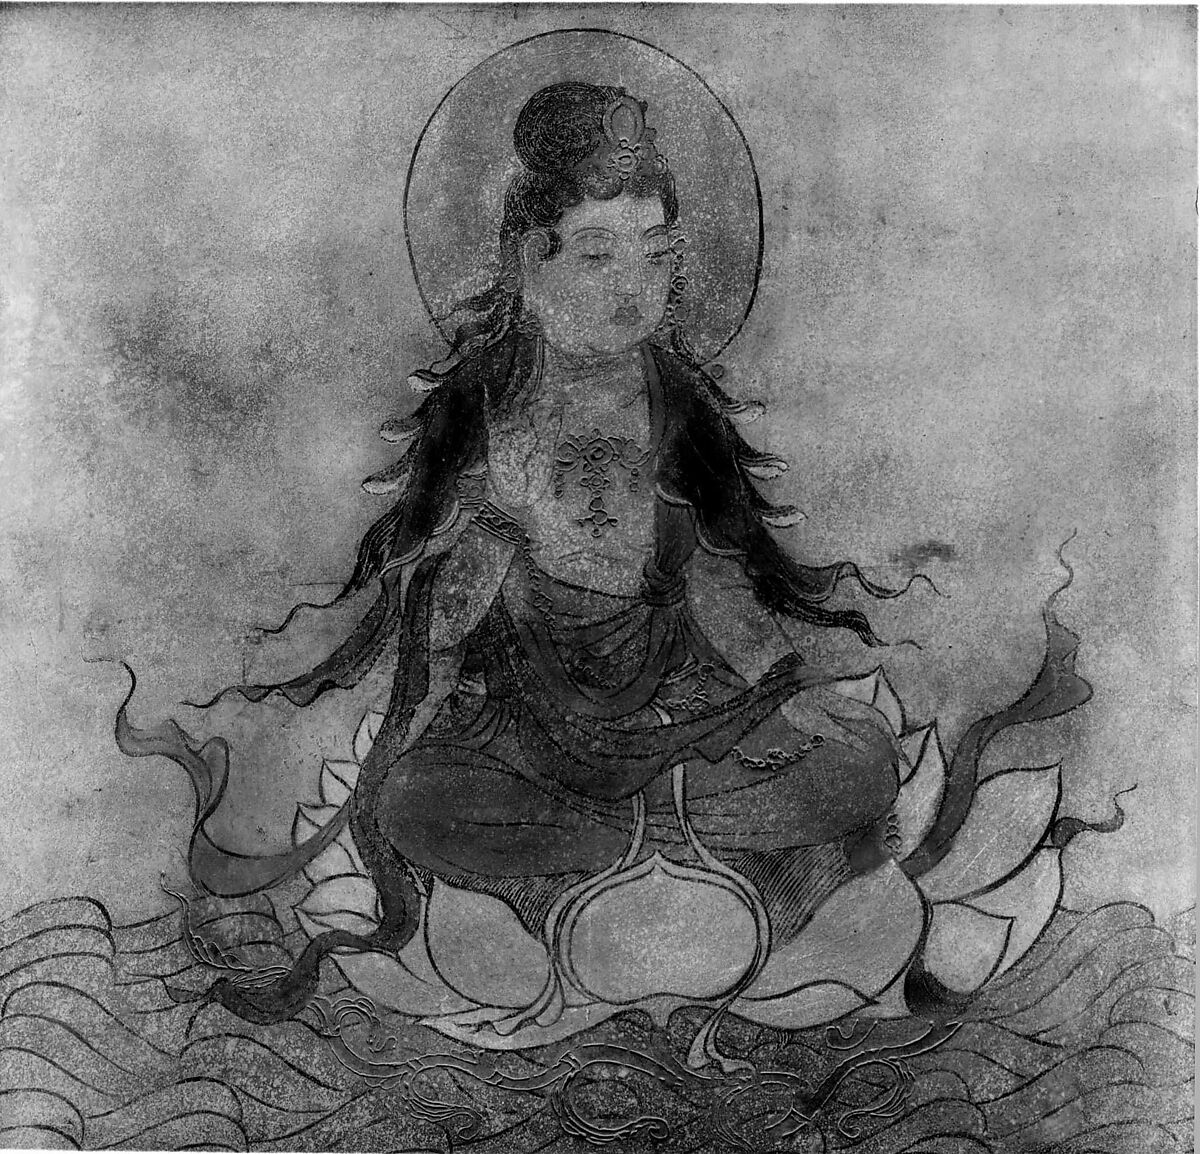 Bodhisattva, Fresco, China 